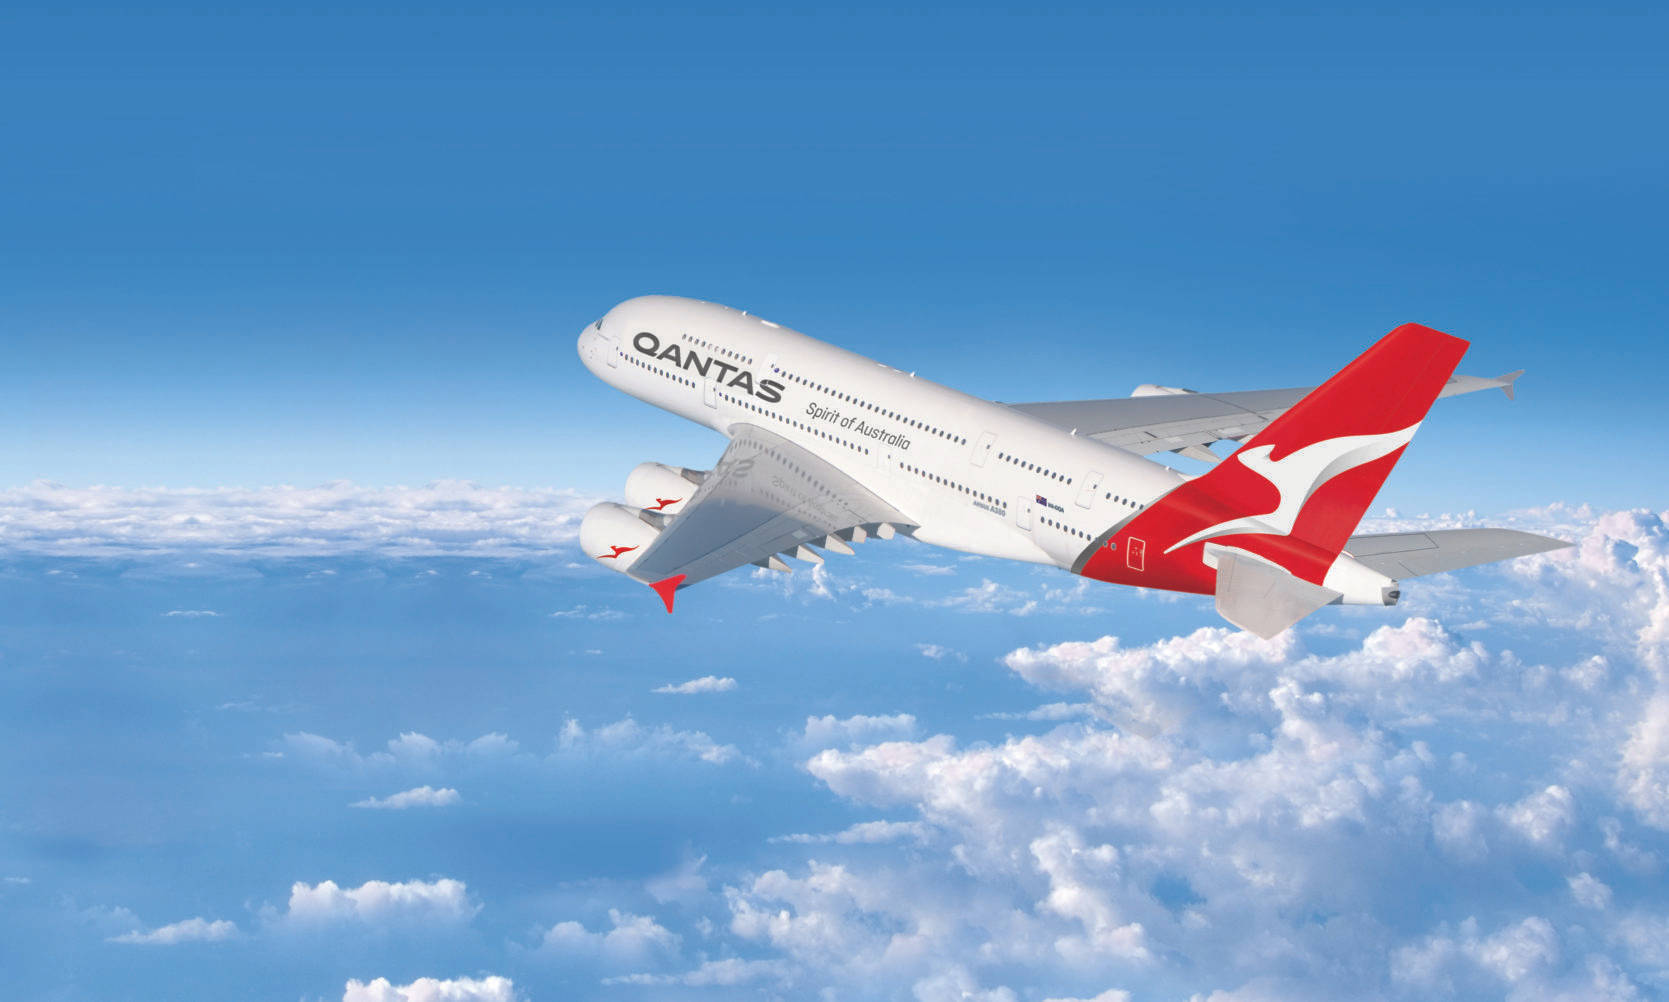 Qantasairways Passagerarflygplan På Den Blåa Himlen. Wallpaper